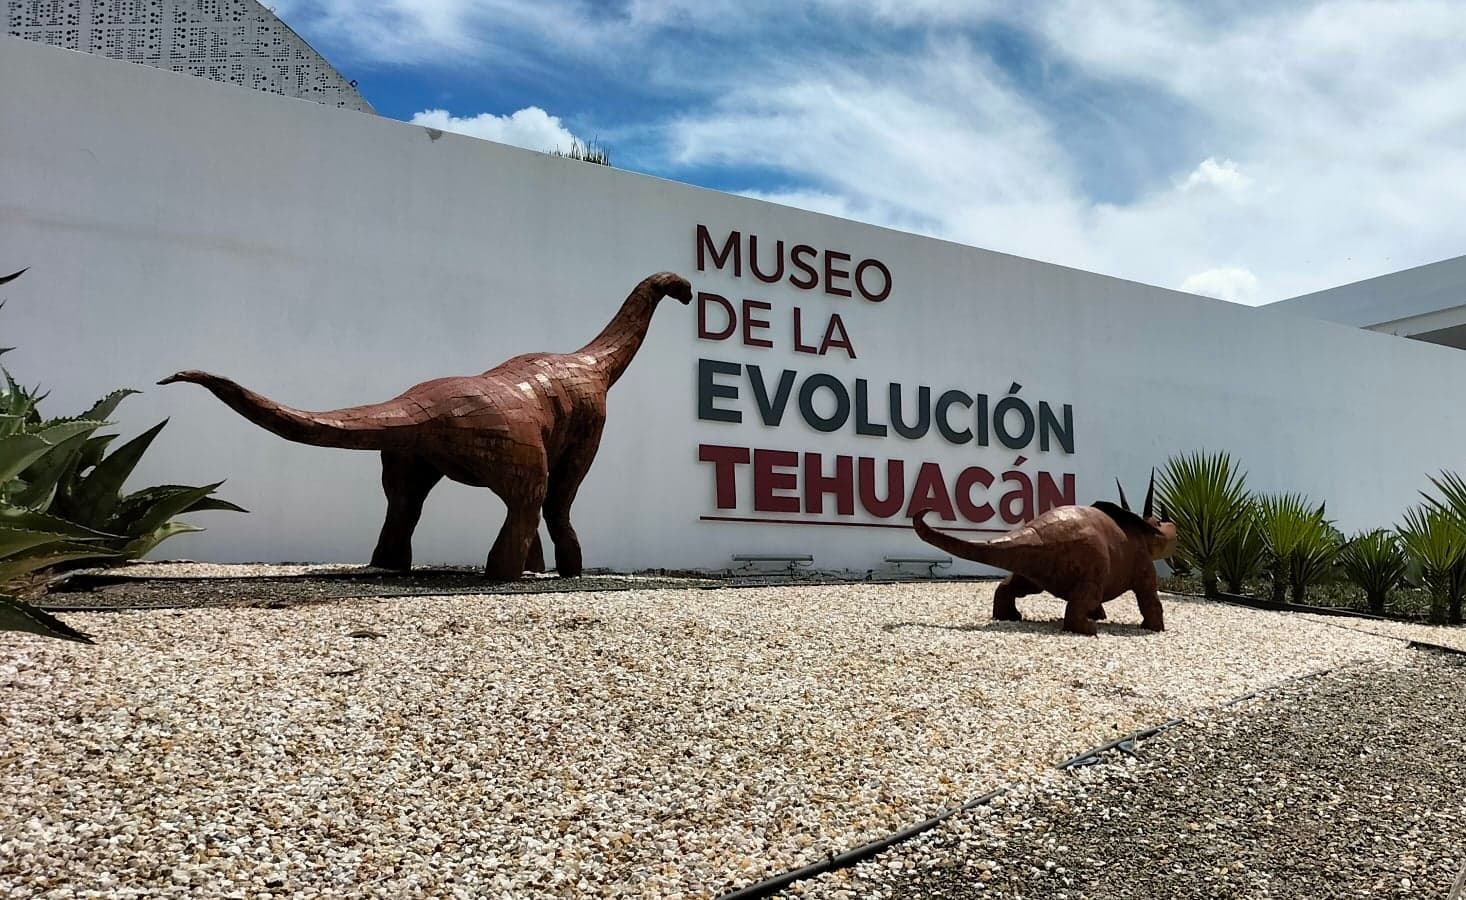 Clasificación y cambio de museografía mantienen cerrado Museo de la Evolución en Tehuacán